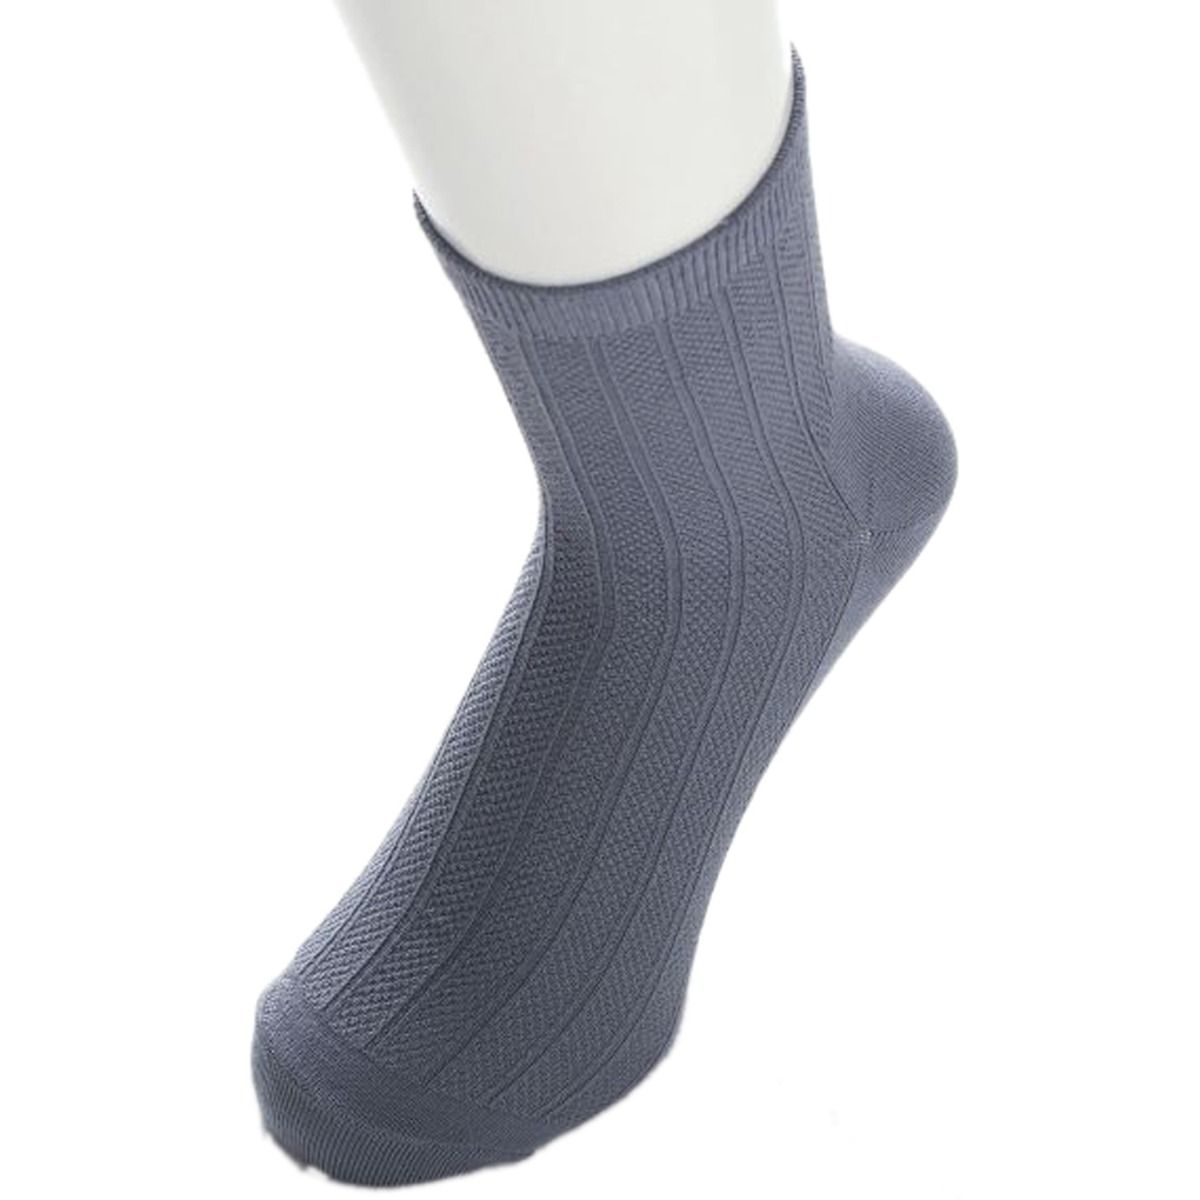 Buy Breathe Fiber Socks For Men 24 - 26 cm, 1 Pair Online